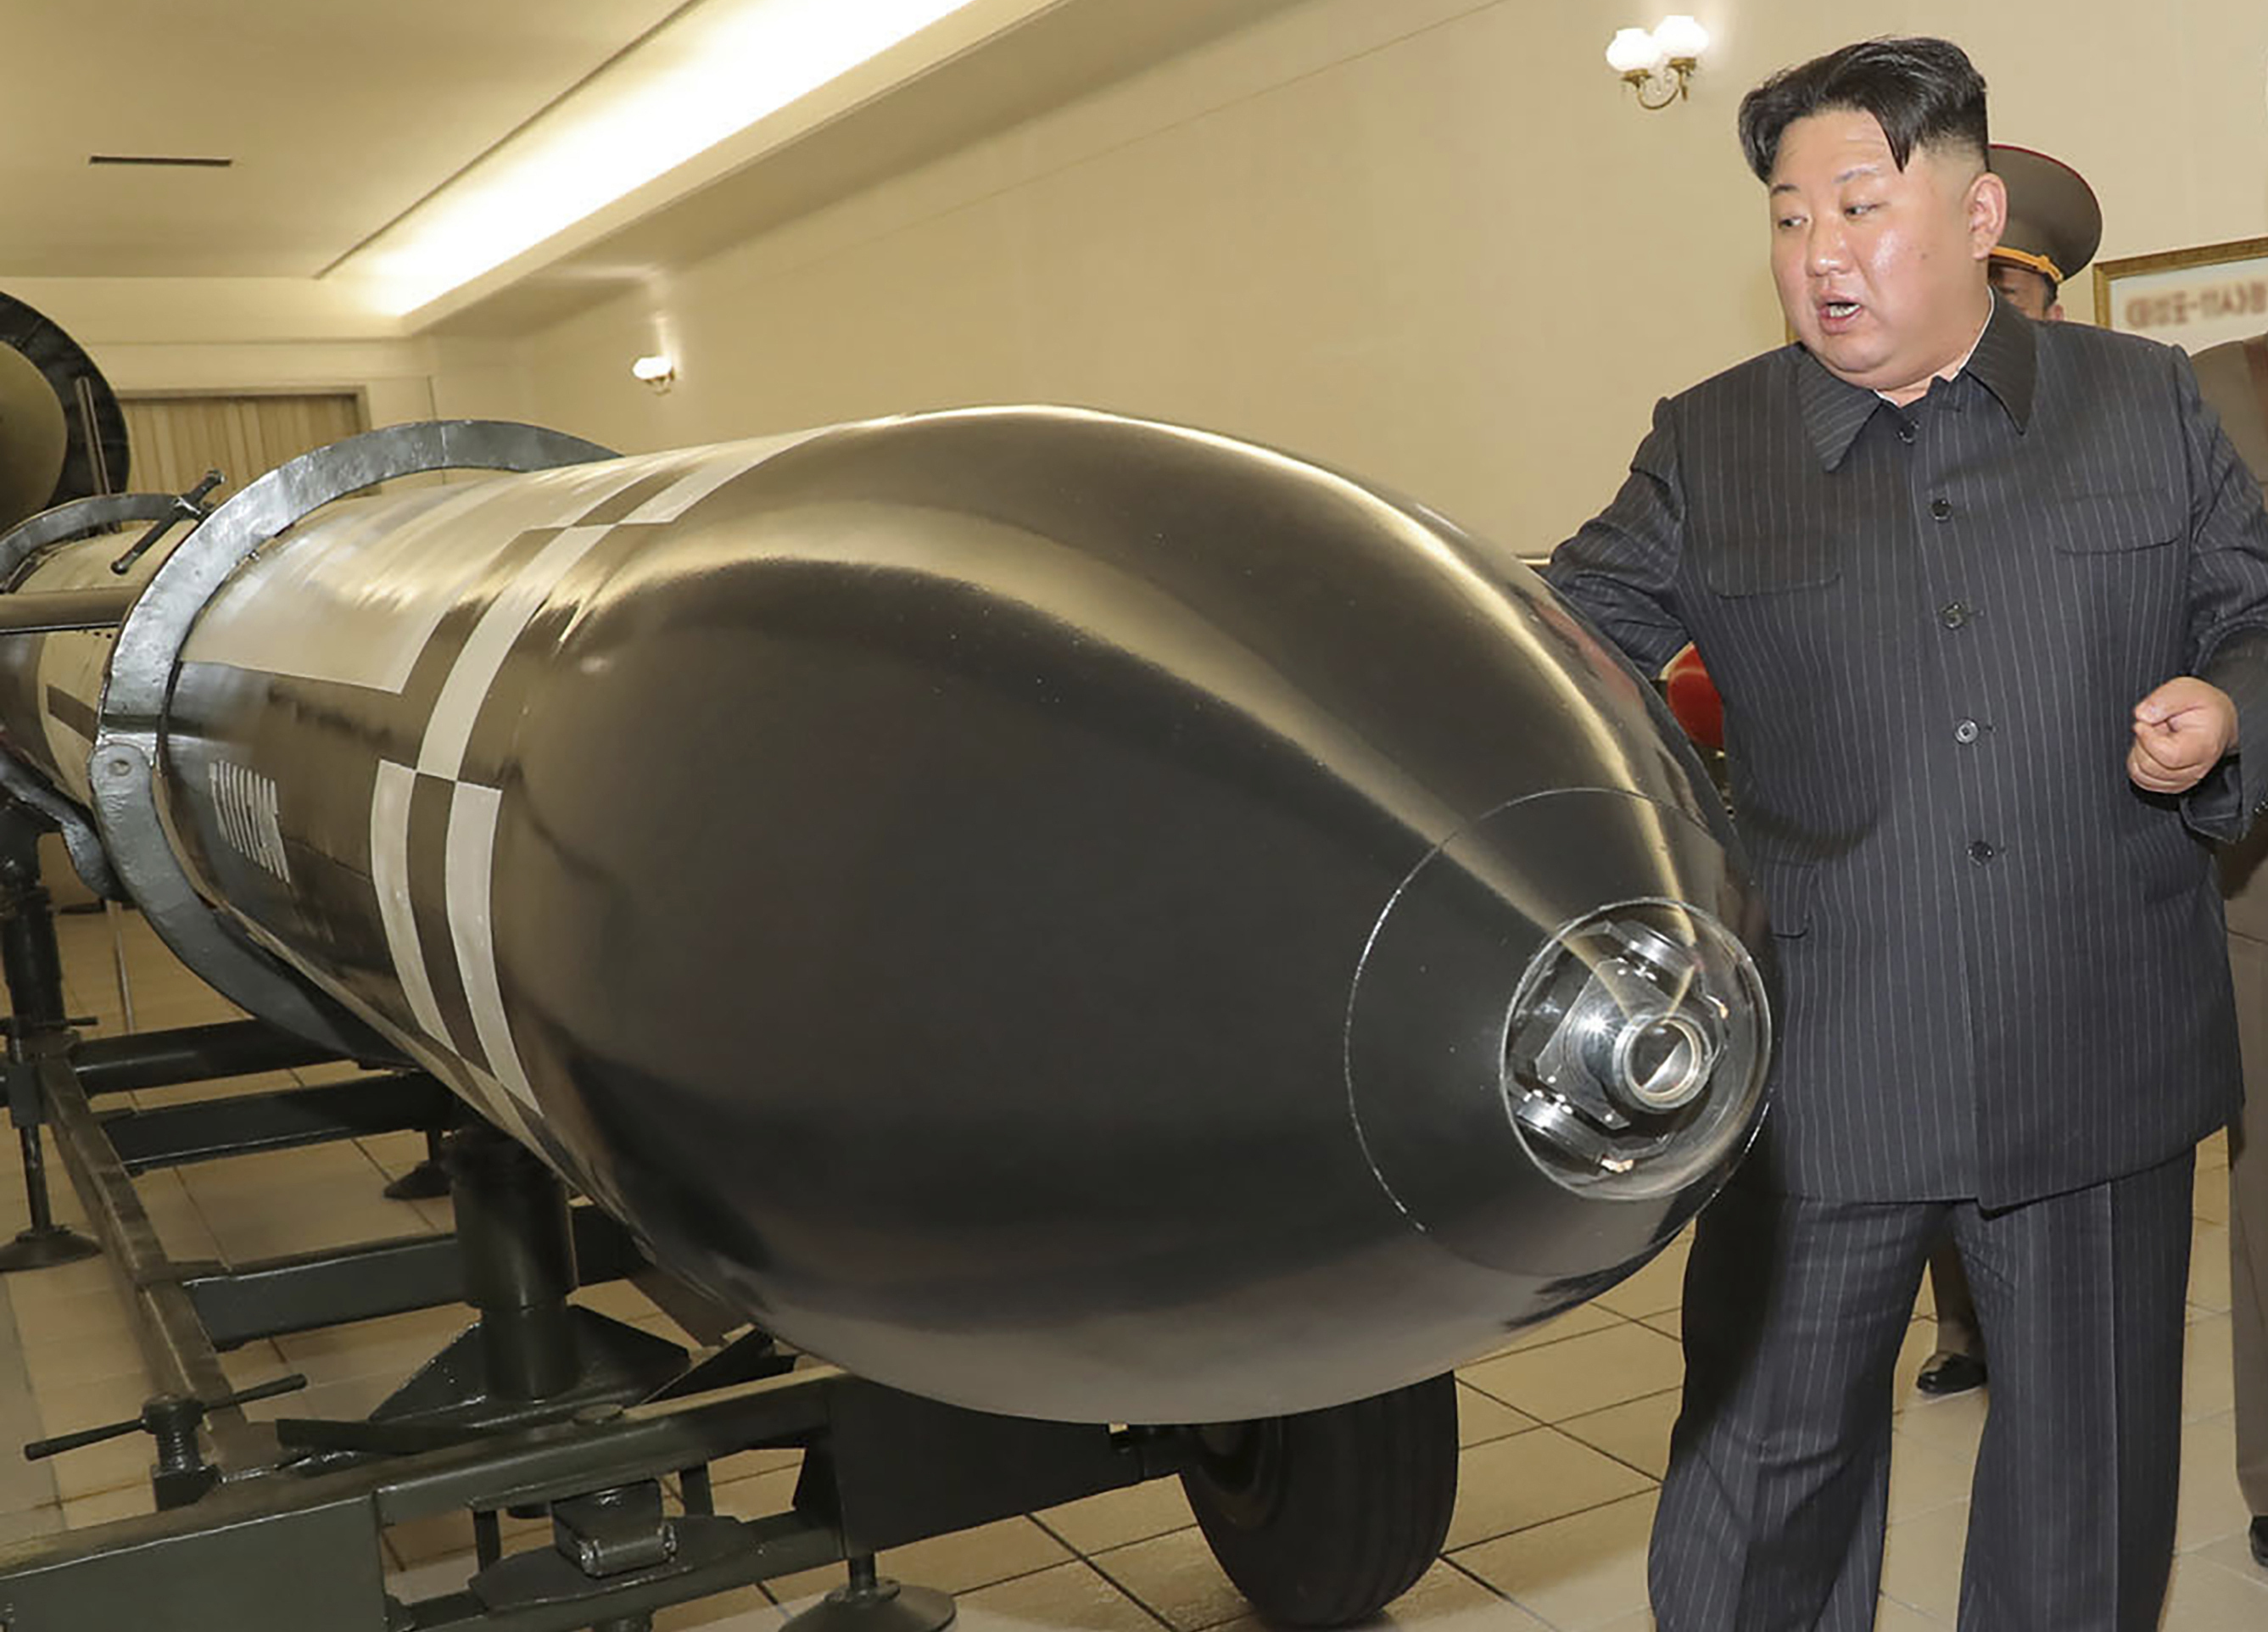 Kim visita una sala en la que se exhiben lo que parecen ser varios tipos de ojivas diseñadas para ser instaladas en misiles o lanzacohetes (KCNA/AP)